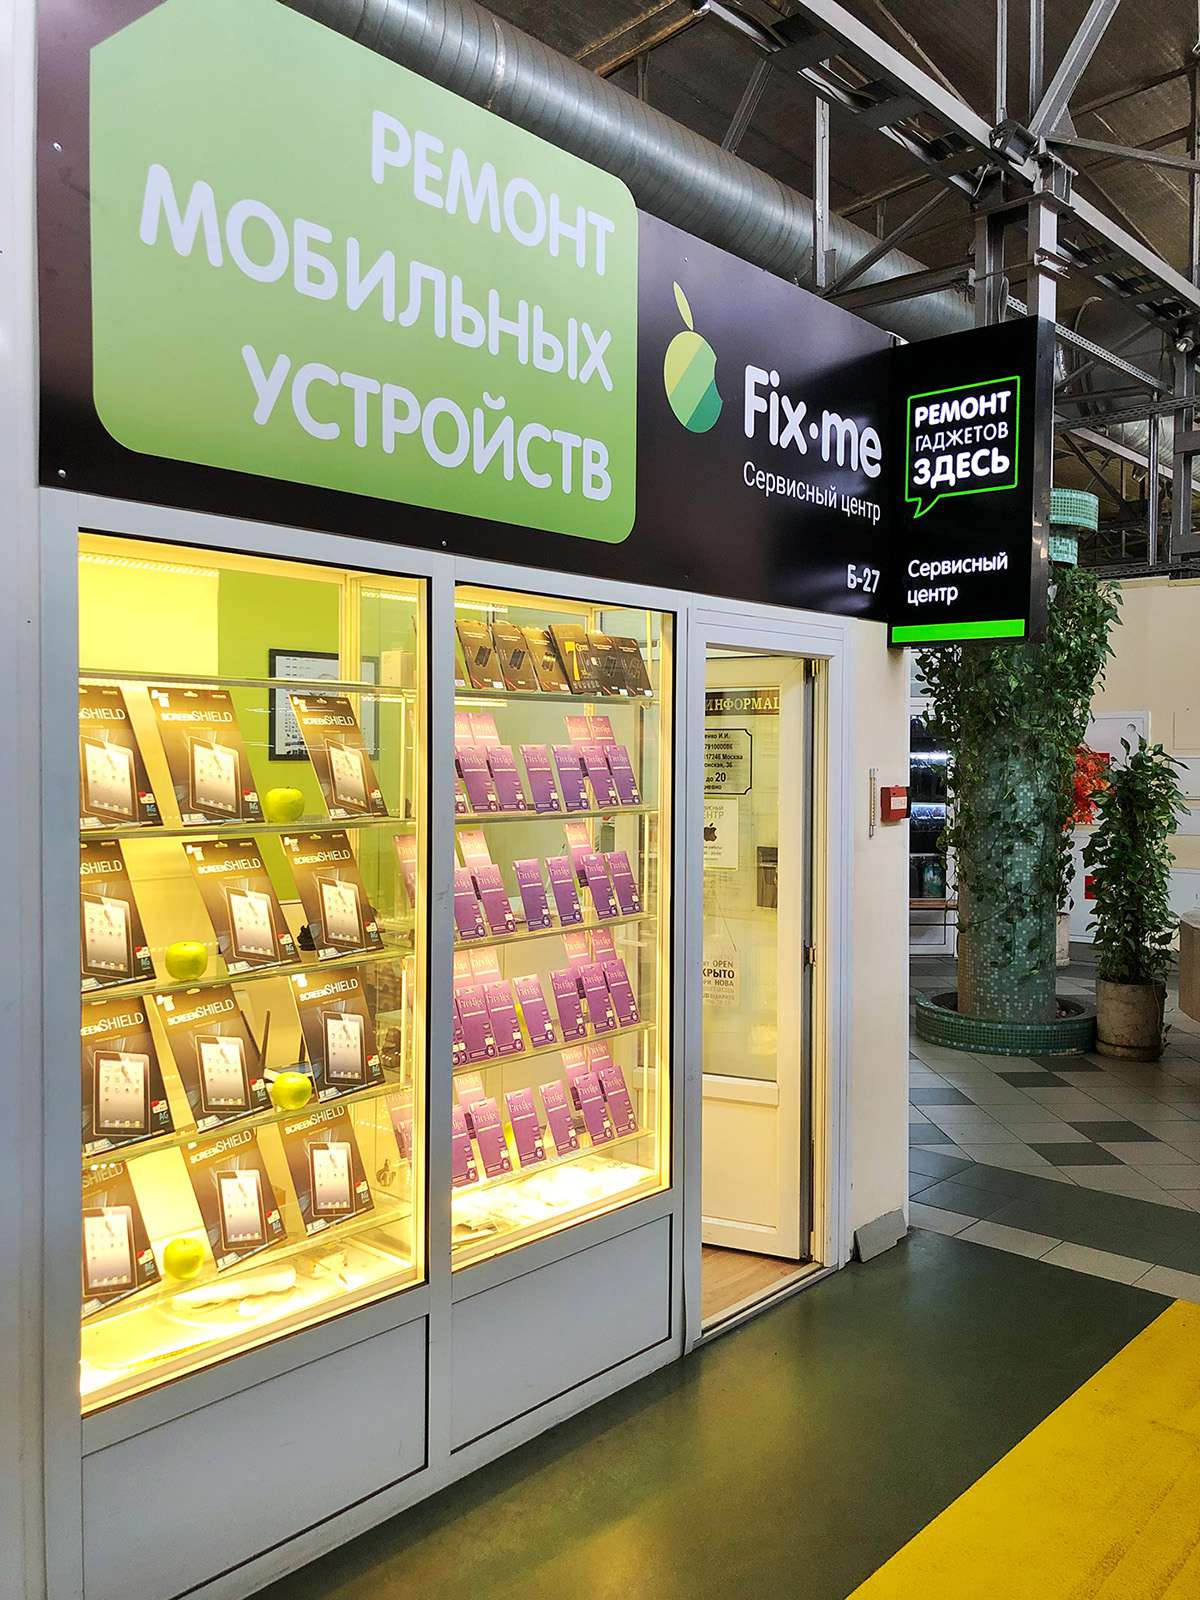 Fix центр. Зеленое яблоко магазин. Сервисный центр Fix. Сервисный центр Эппл Москва. Сервисный центр Аппле в Москве.